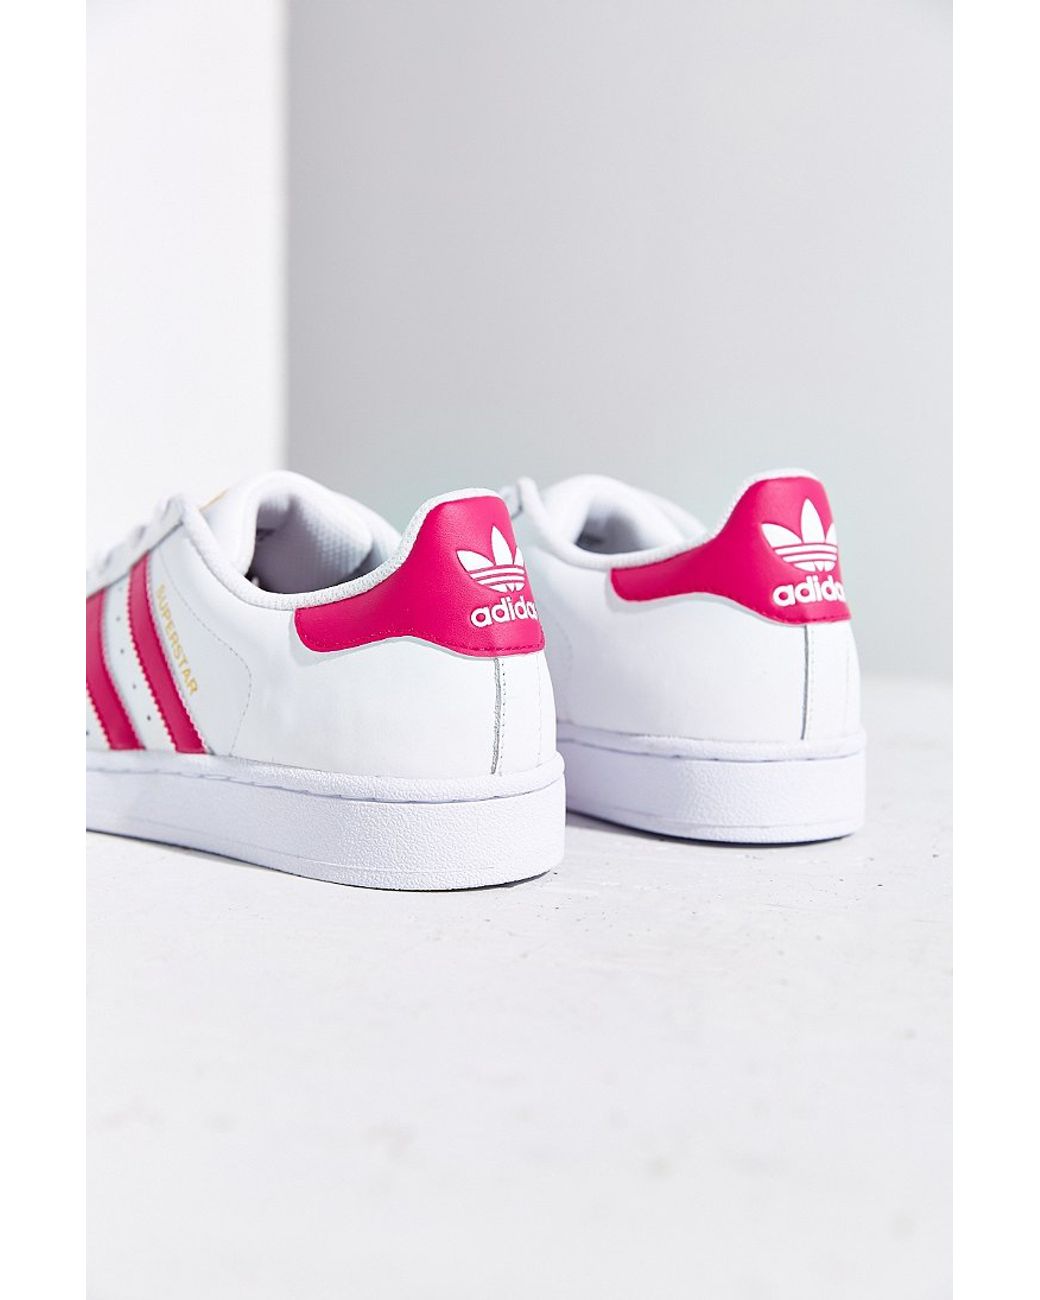 adidas Originals Superstar Women'S Sneaker in Pink | Lyst